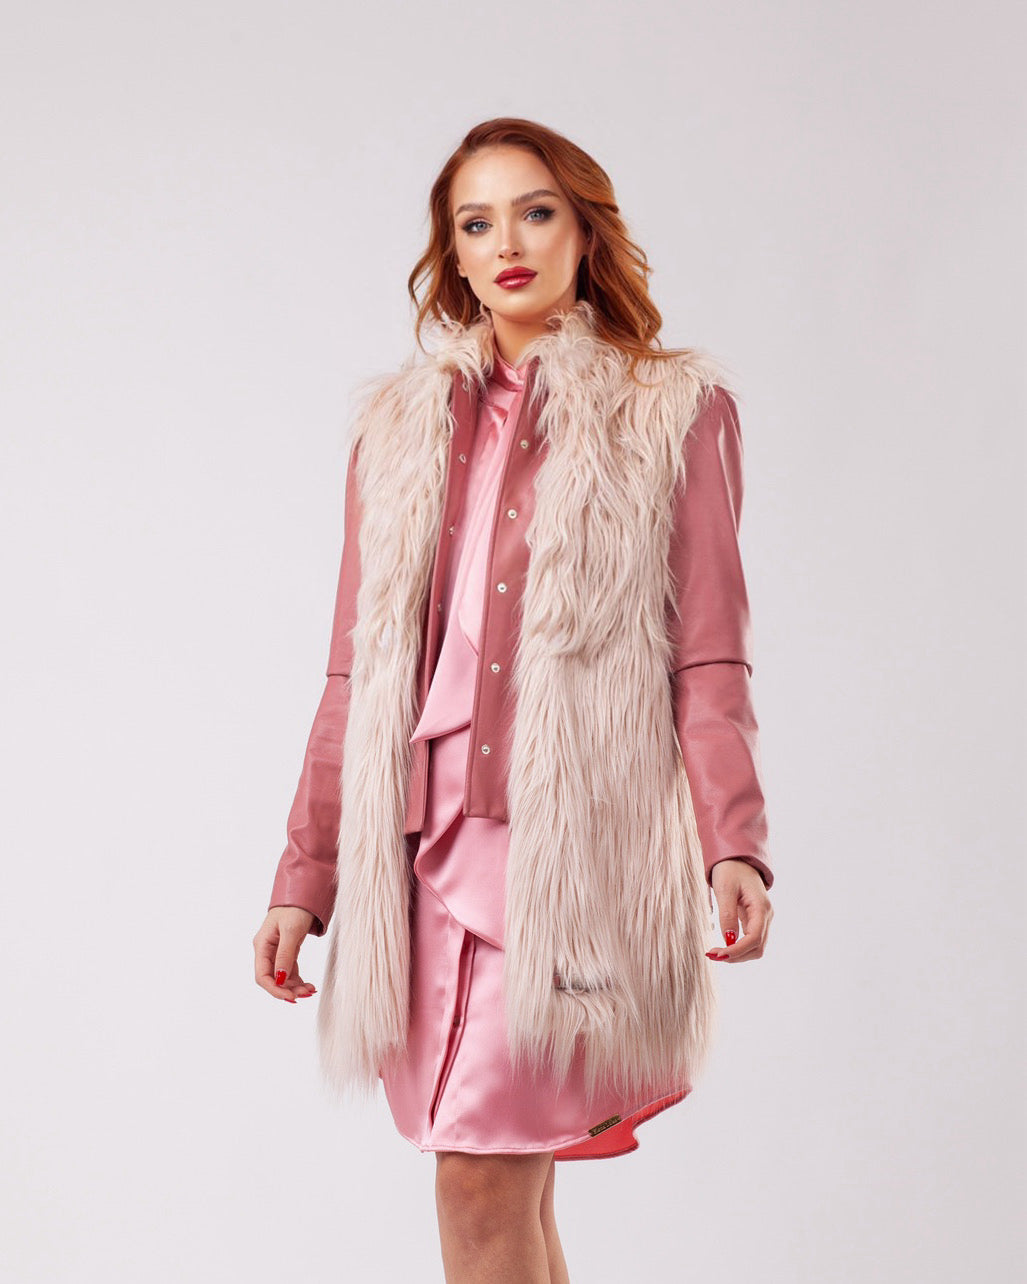 Blush Elegance Coat With Faux Fur Vest